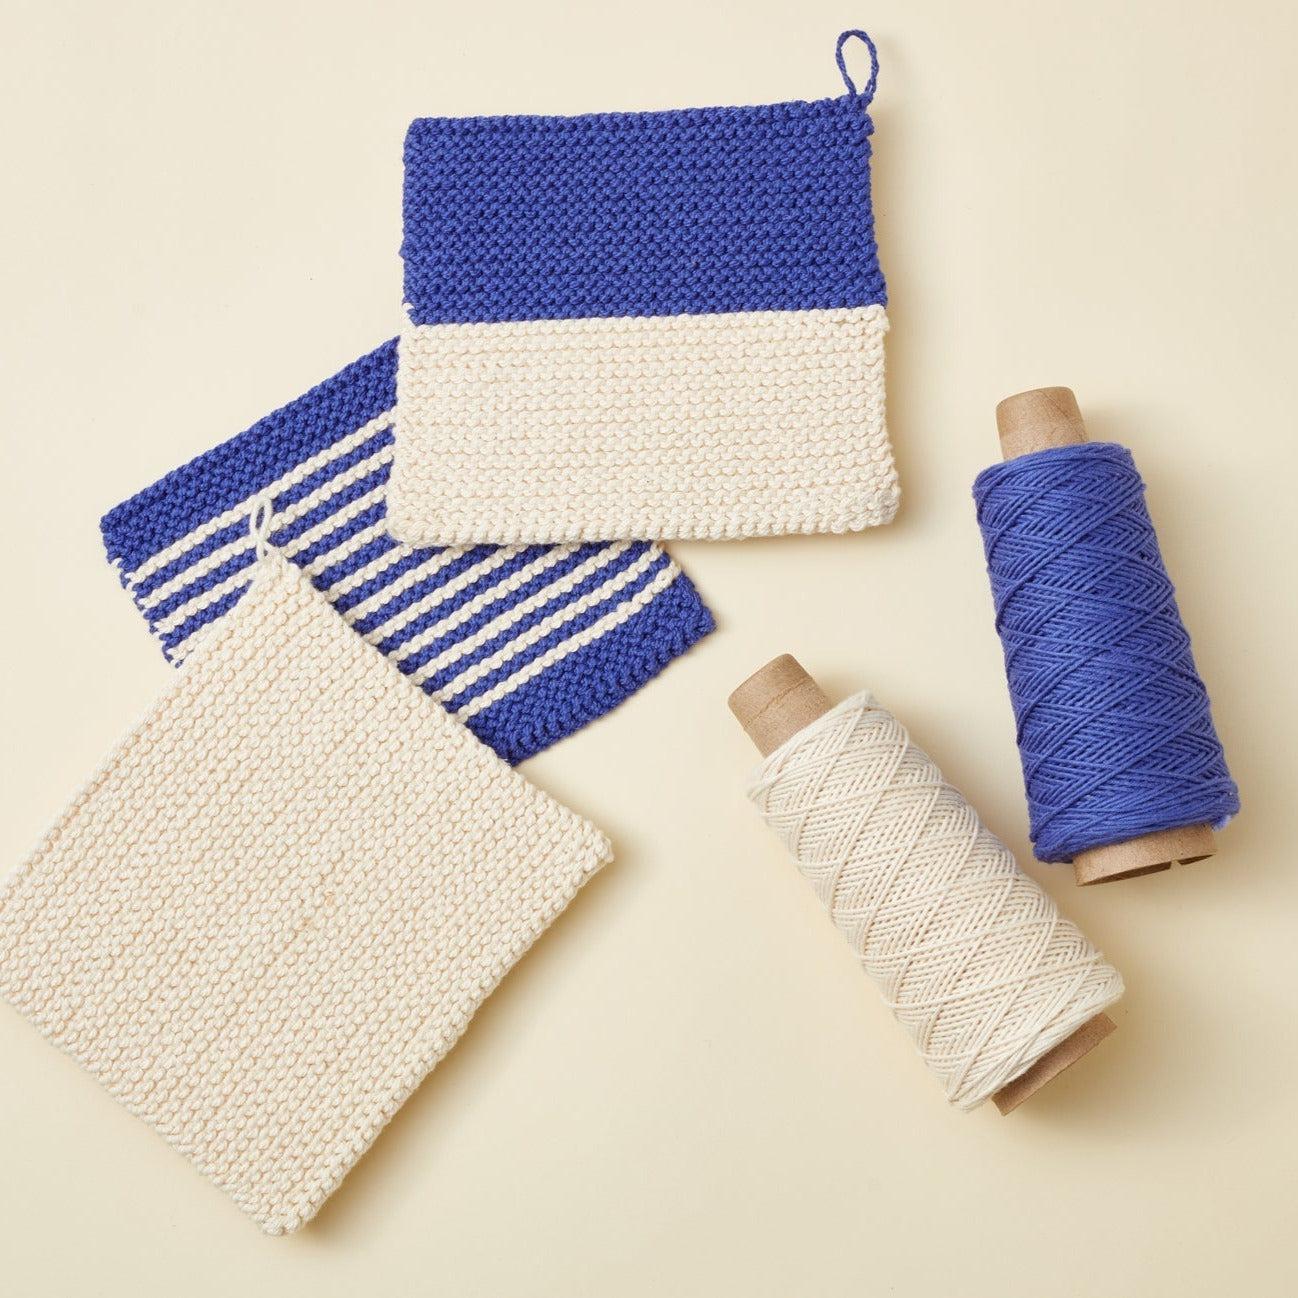 Beginner Knitting Kit - 3 Washcloths